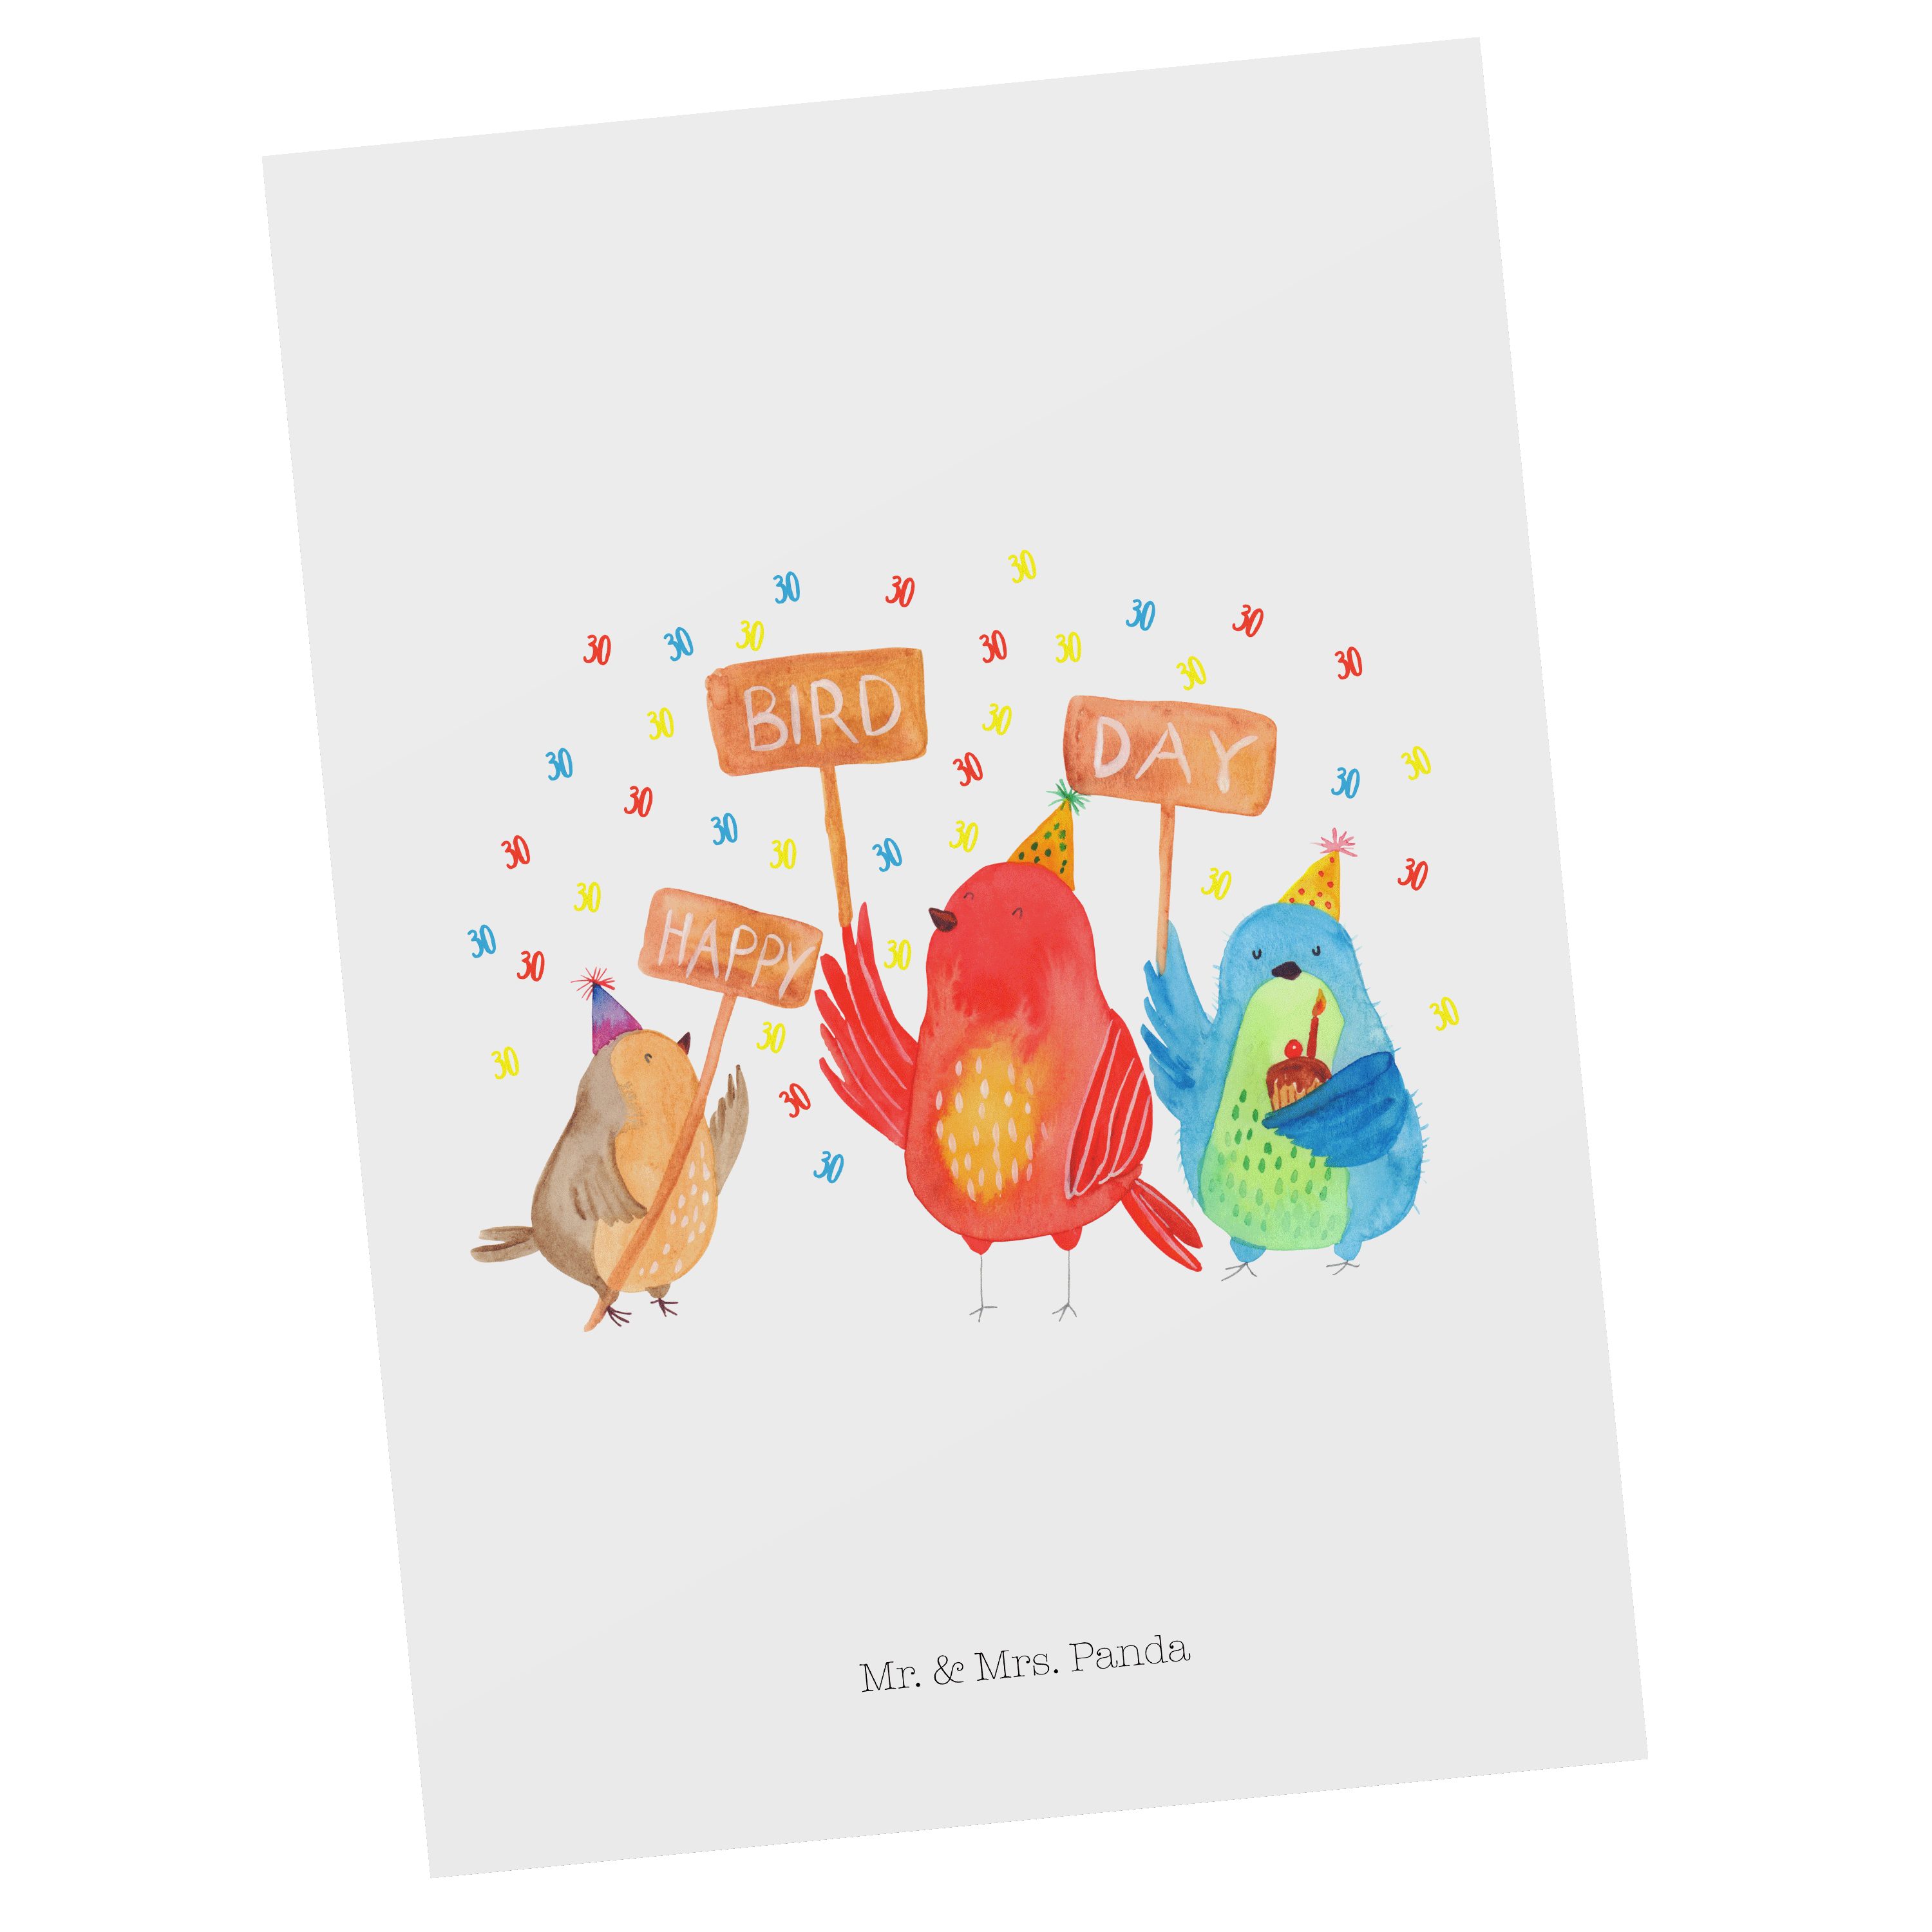 Mr. & Mrs. Panda Postkarte f Weiß Geburtstag Geschenk, - Day 30. Bird Happy - Grußkarte, Feiern